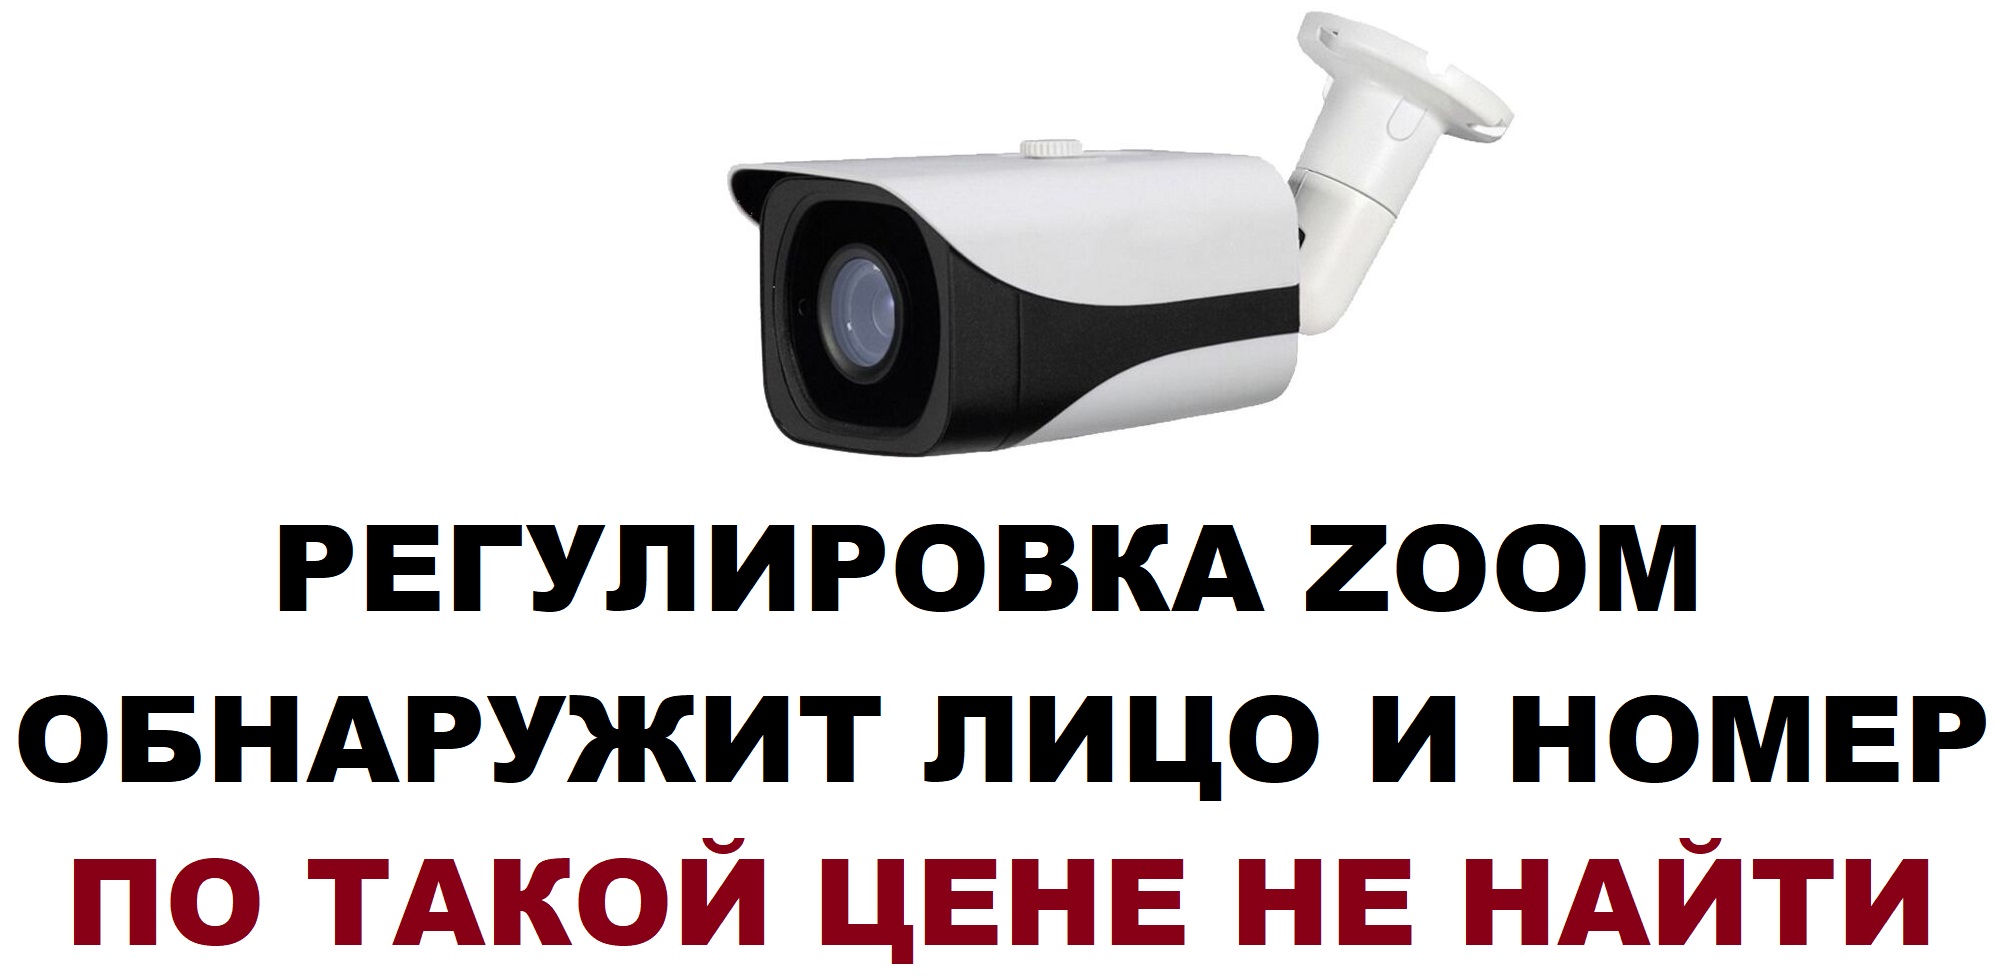 Уличная вариофокальная видеокамера камера видеонаблюдения AHD 2mp 2.8-12мм с варио объективом